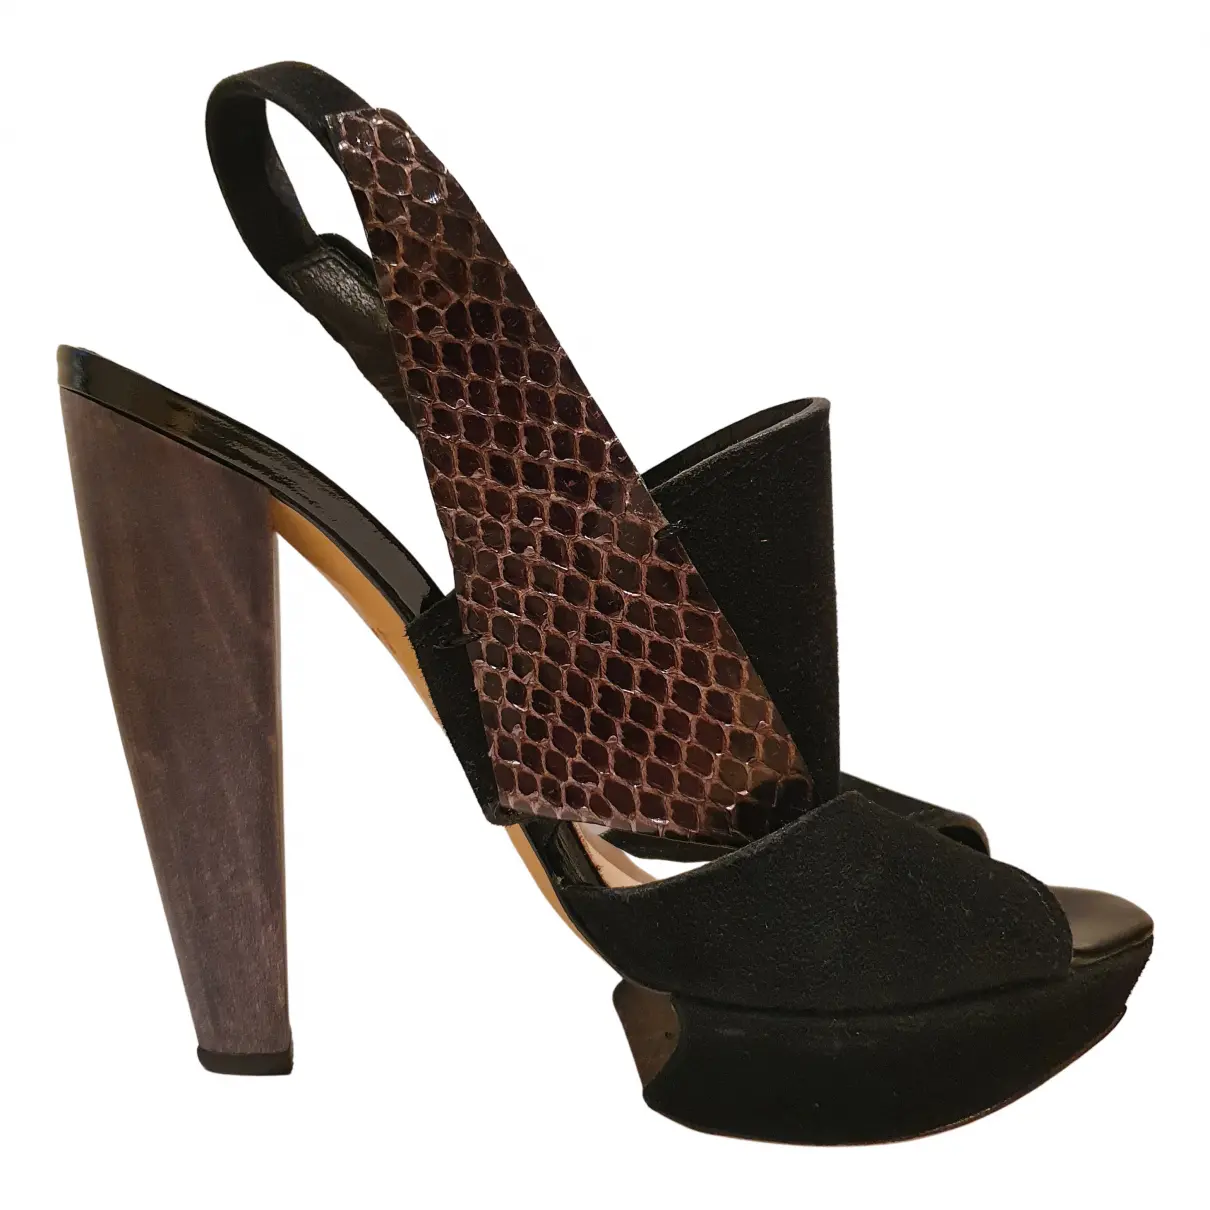 Buy Nicholas Kirkwood Python heels online